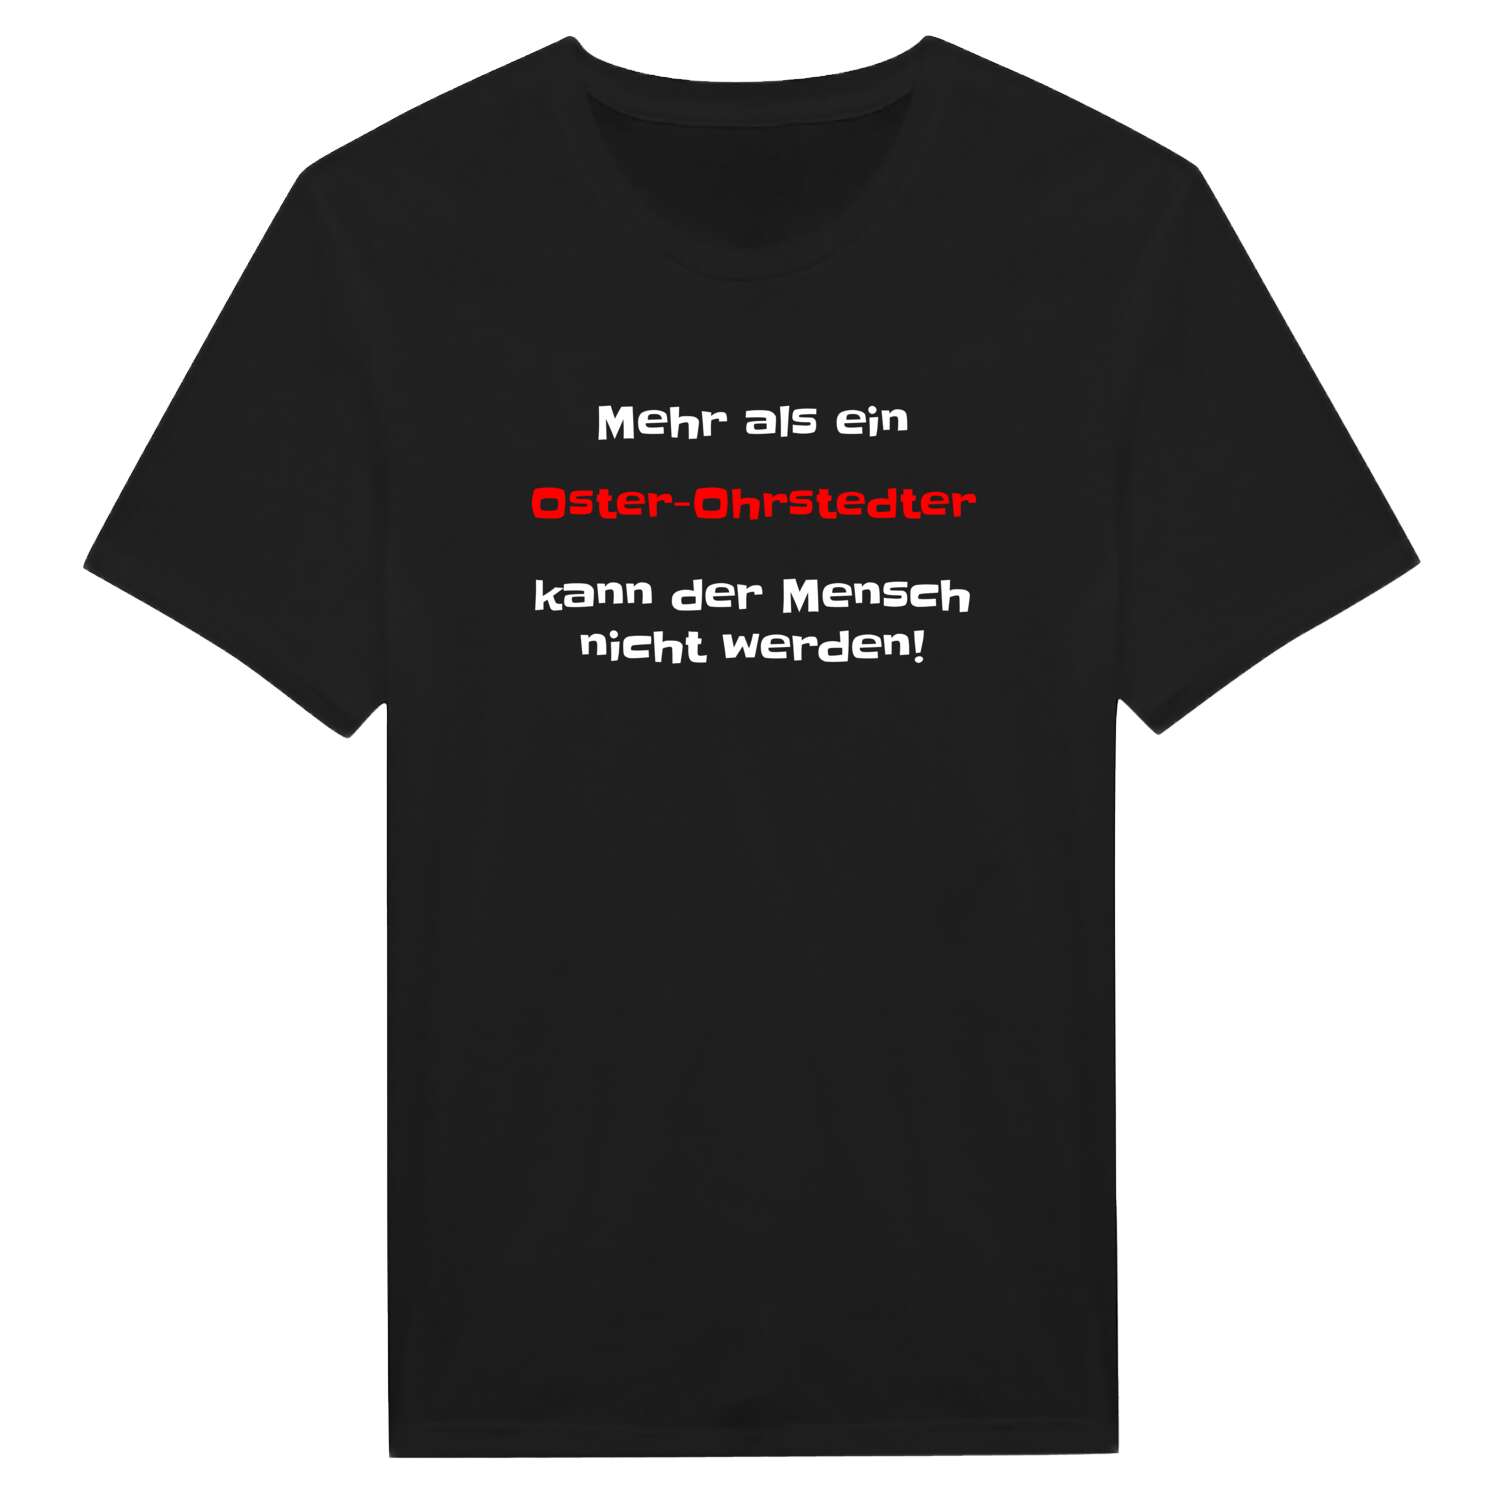 Oster-Ohrstedt T-Shirt »Mehr als ein«